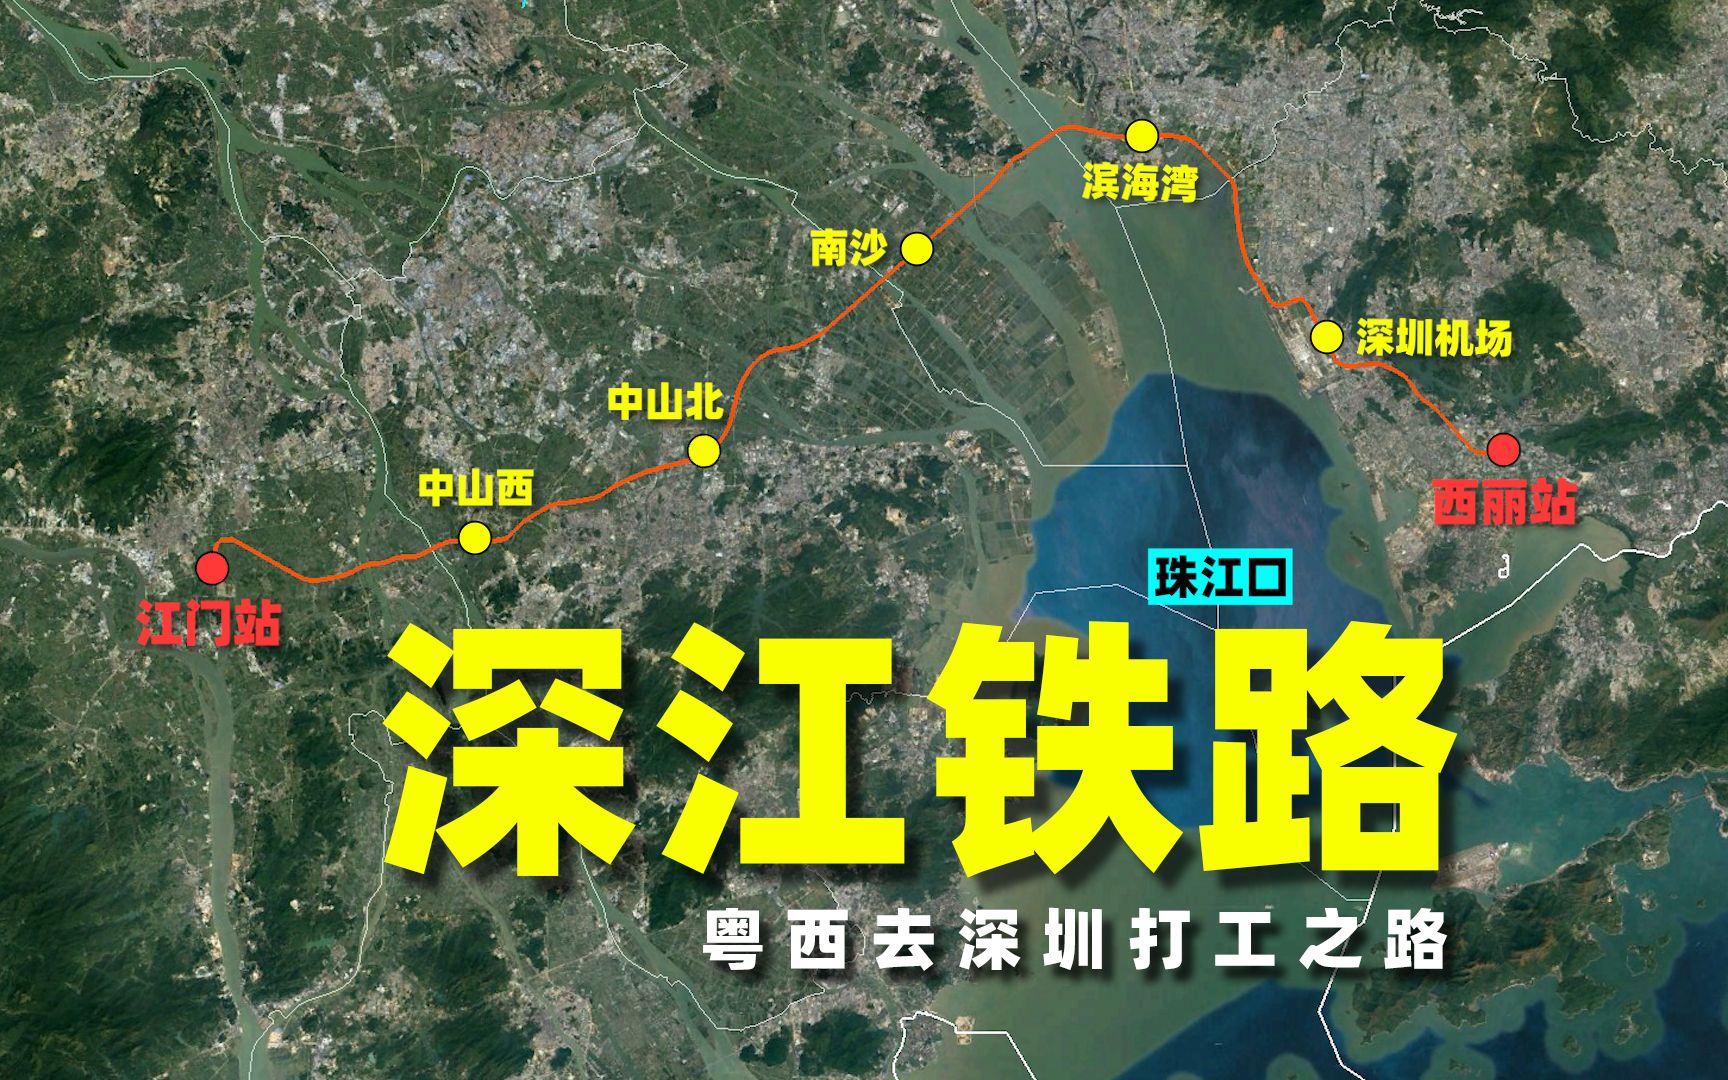 迟到的深江铁路,粤西地区去深圳终于可以绕过广州南站